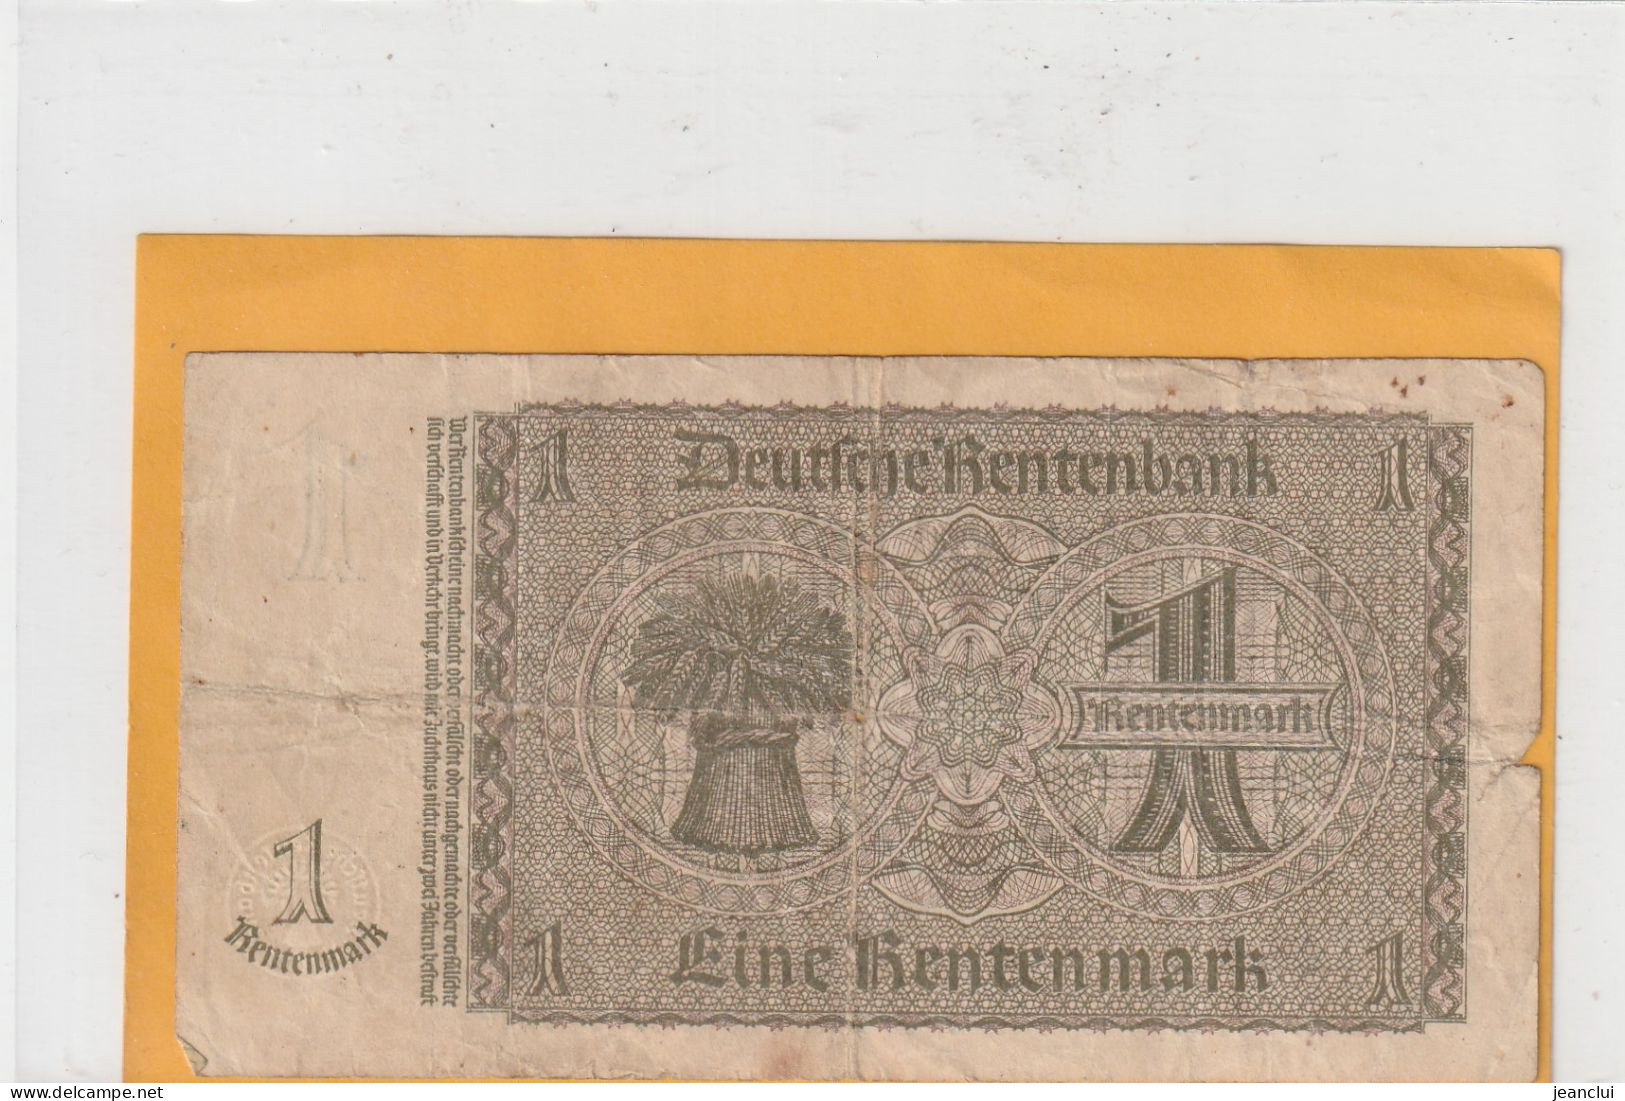 RENTENBANKSCHEINE .  1 RENTENMARK  .  30-1-1937 ..  N°  J.88105220  .  2 SCANNES - [13] Bundeskassenschein